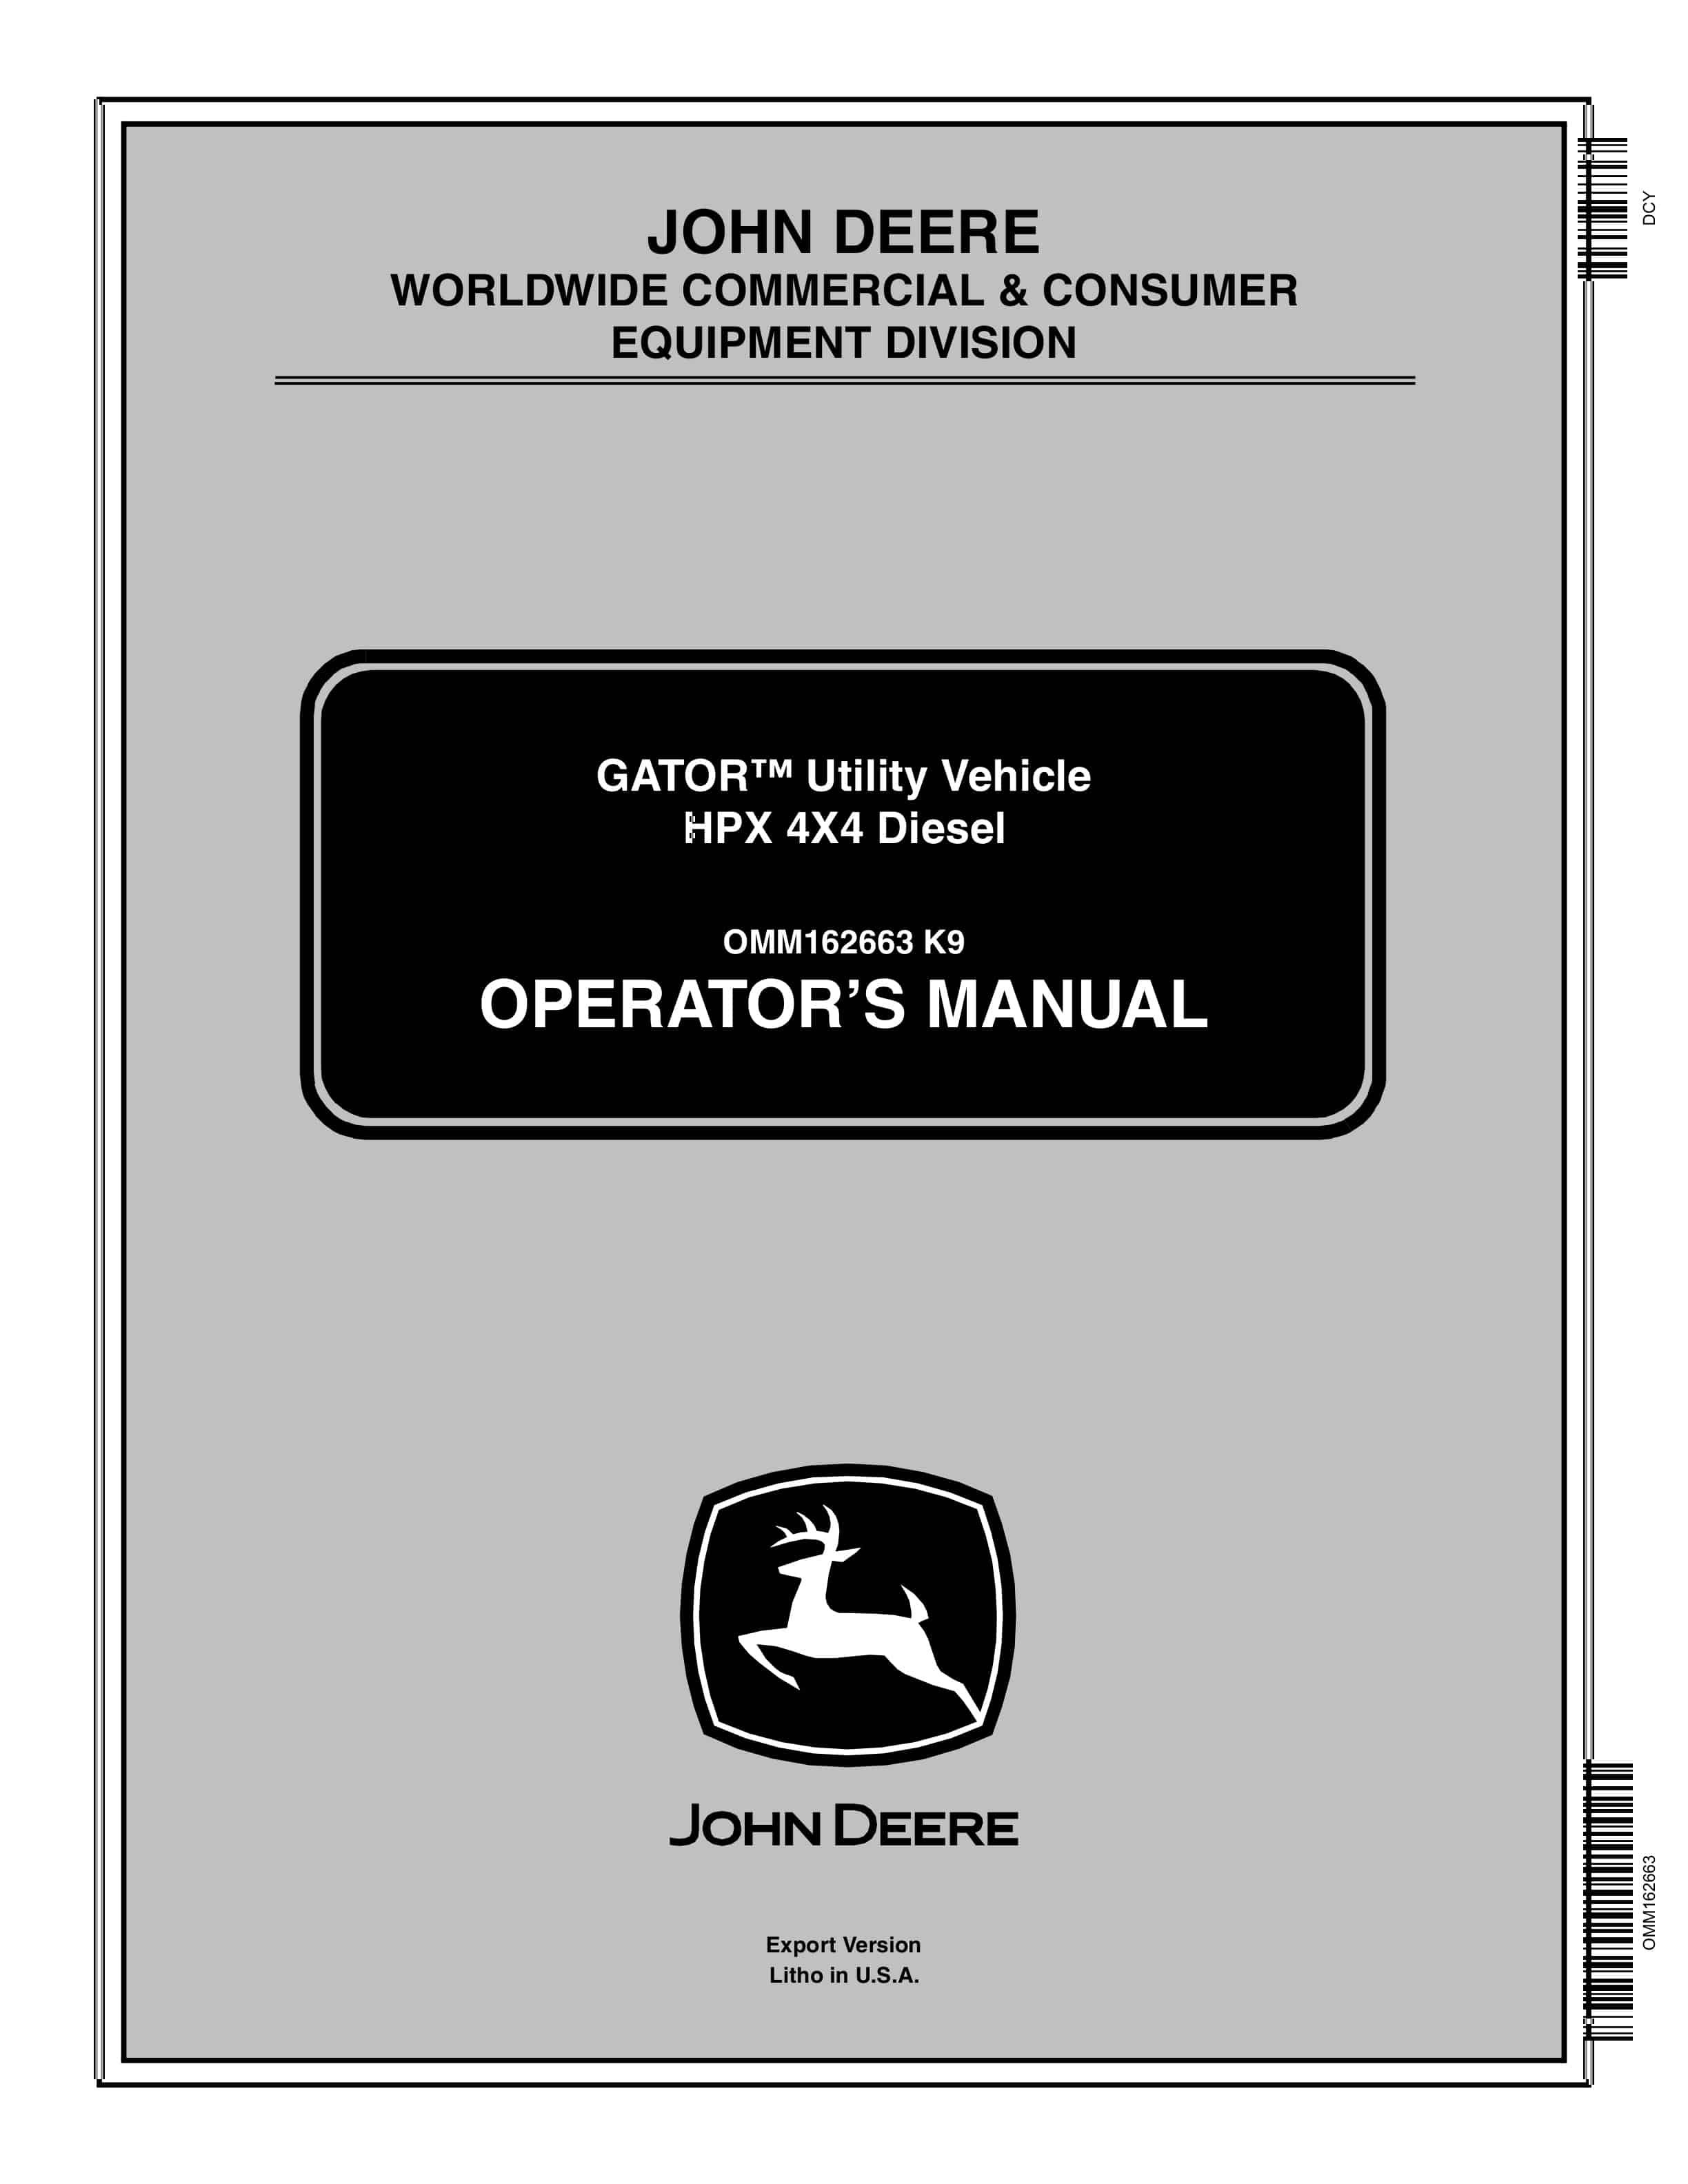 John Deere HPX 4X4 Diesel GATOR Utility Vehicles Operator Manual OMM162663 1